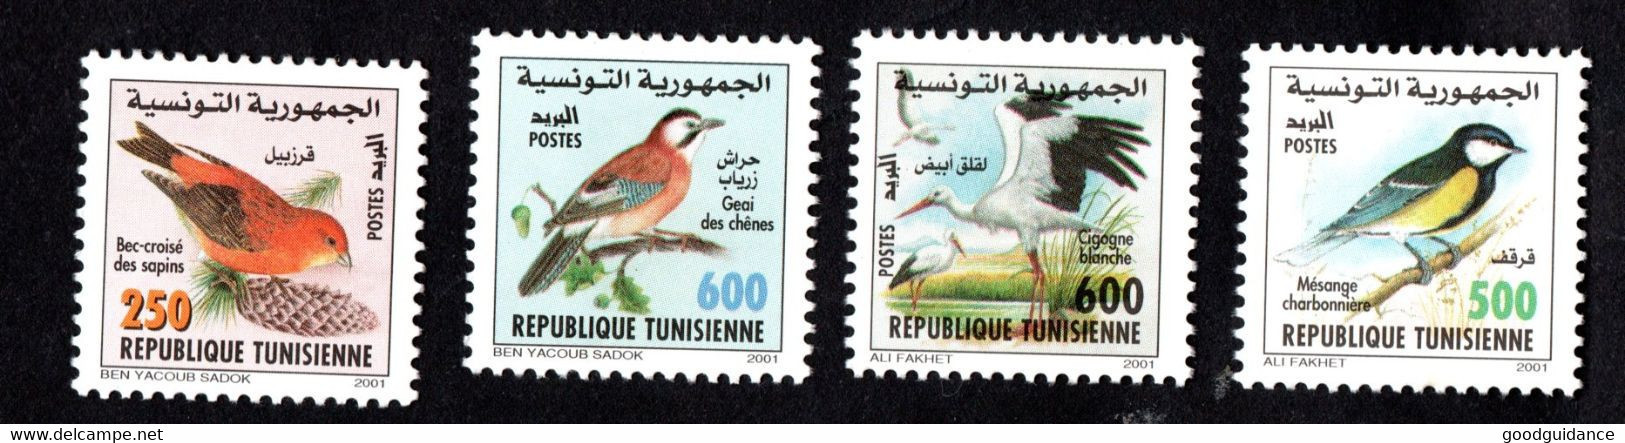 2001-Tunisie-Oiseaux De Tunisie-Cigogne Blanche-Bec-croisé– Geai Des Chênes-Mésange-Charbonnière– Série Compl.4v.MNH** - Sparrows